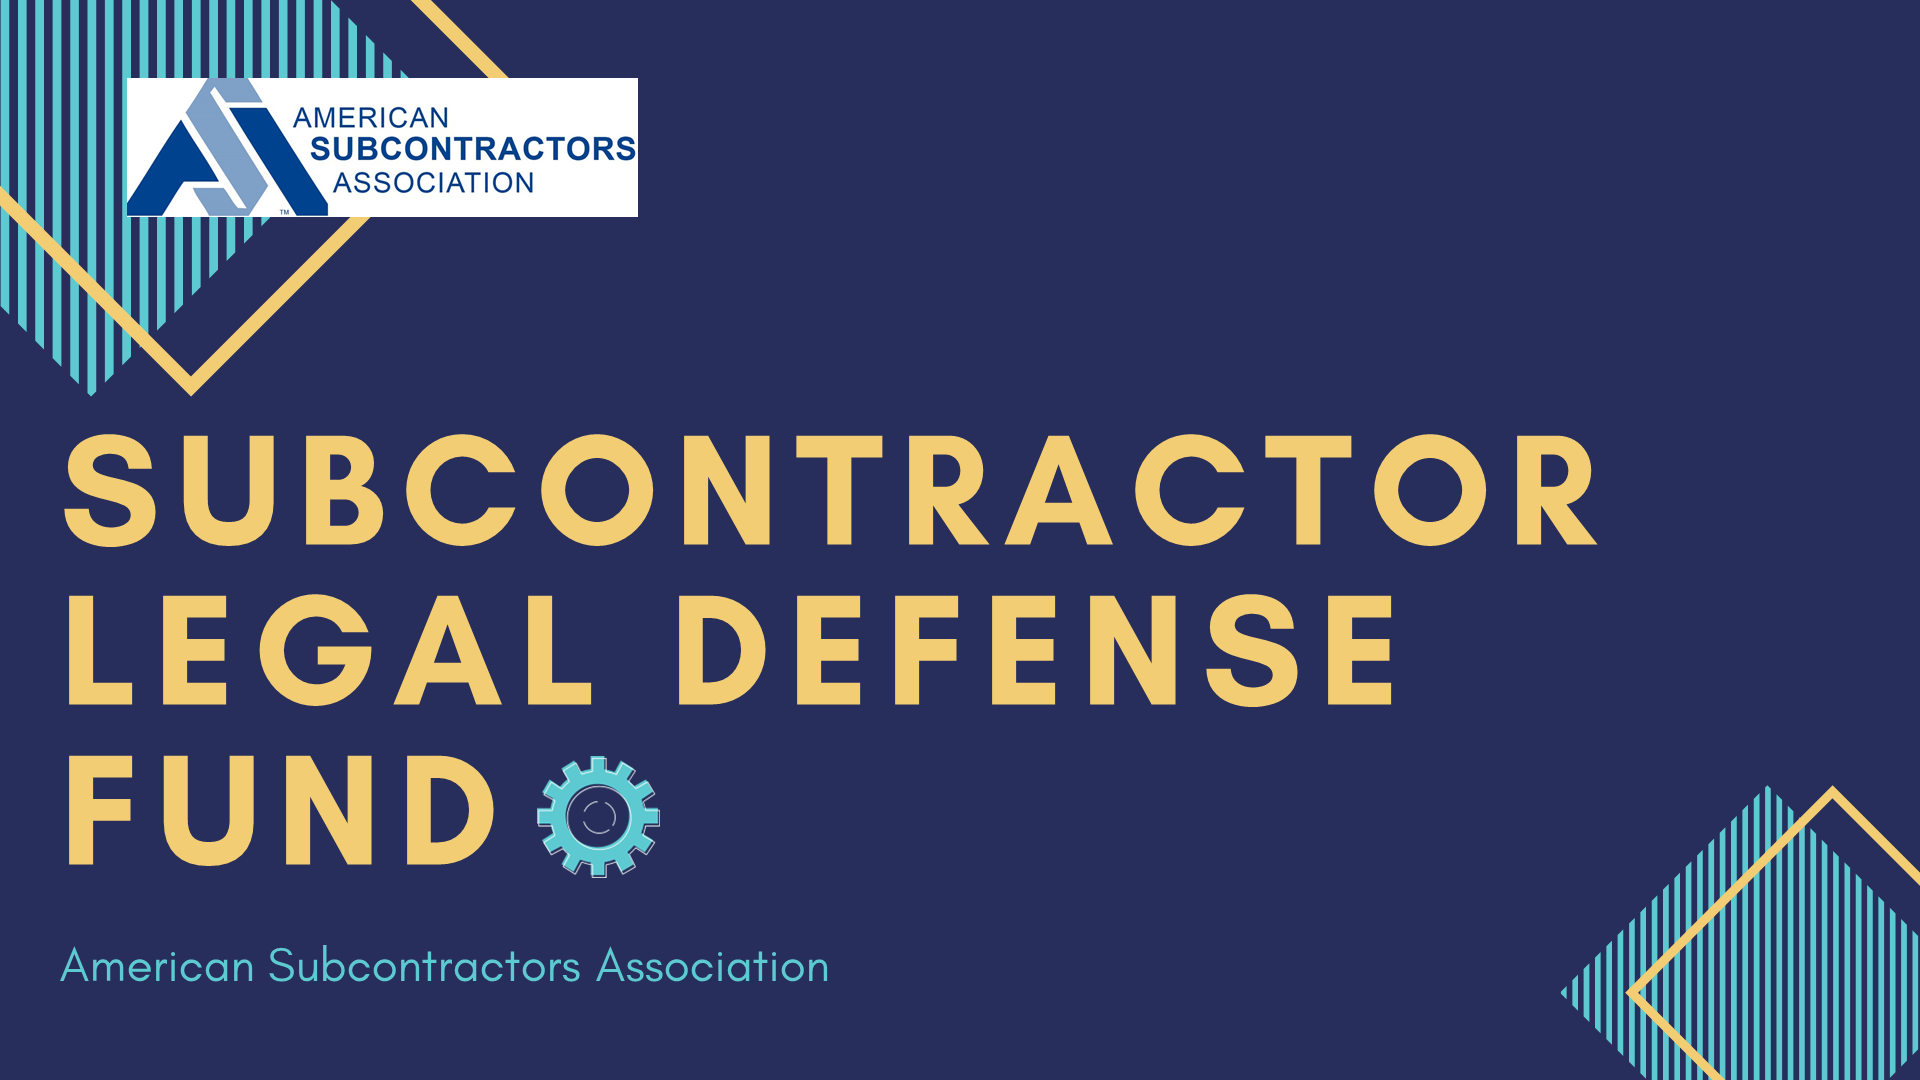 subcontractor legal defense fund presentation 2020